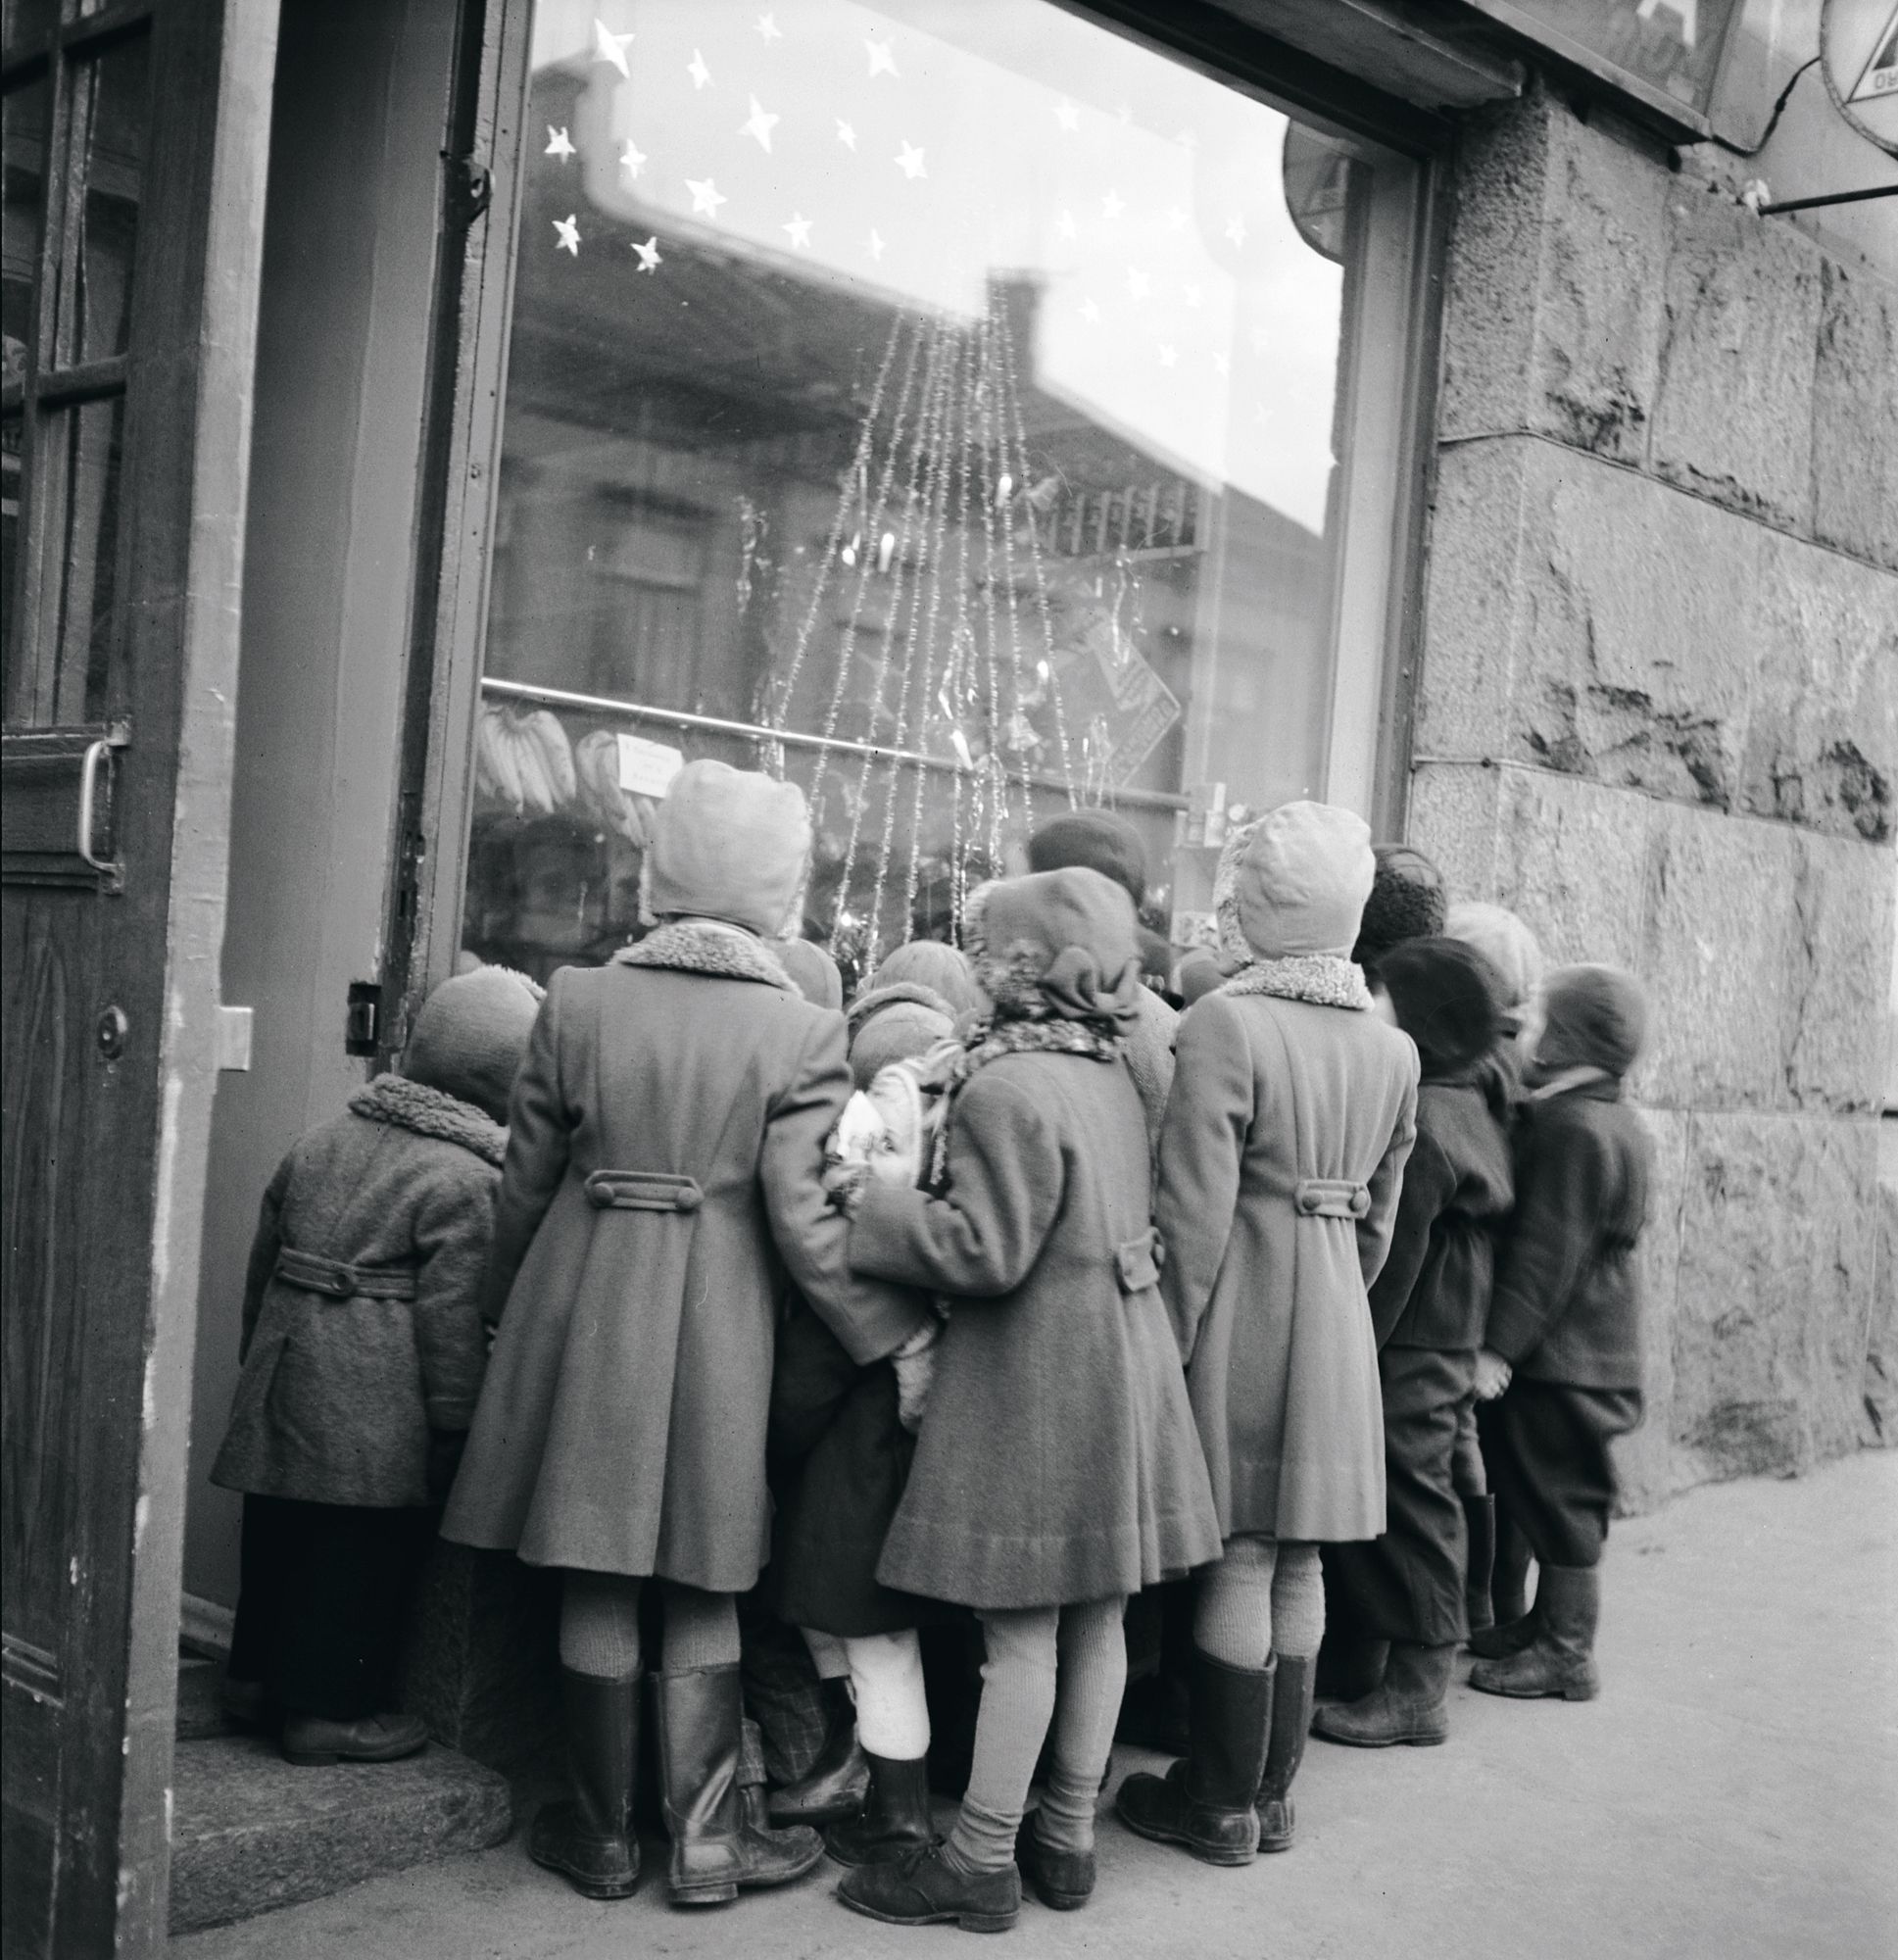 Joulun alla 1949 lapset kerääntyivät Helsingin ­Viipurinkadulla ihastelemaan näyteikkunaa, jossa oli joulukuusen lisäksi tuolloin harvinaisia herkkuja, kuten banaaneja ja appelsiineja. 